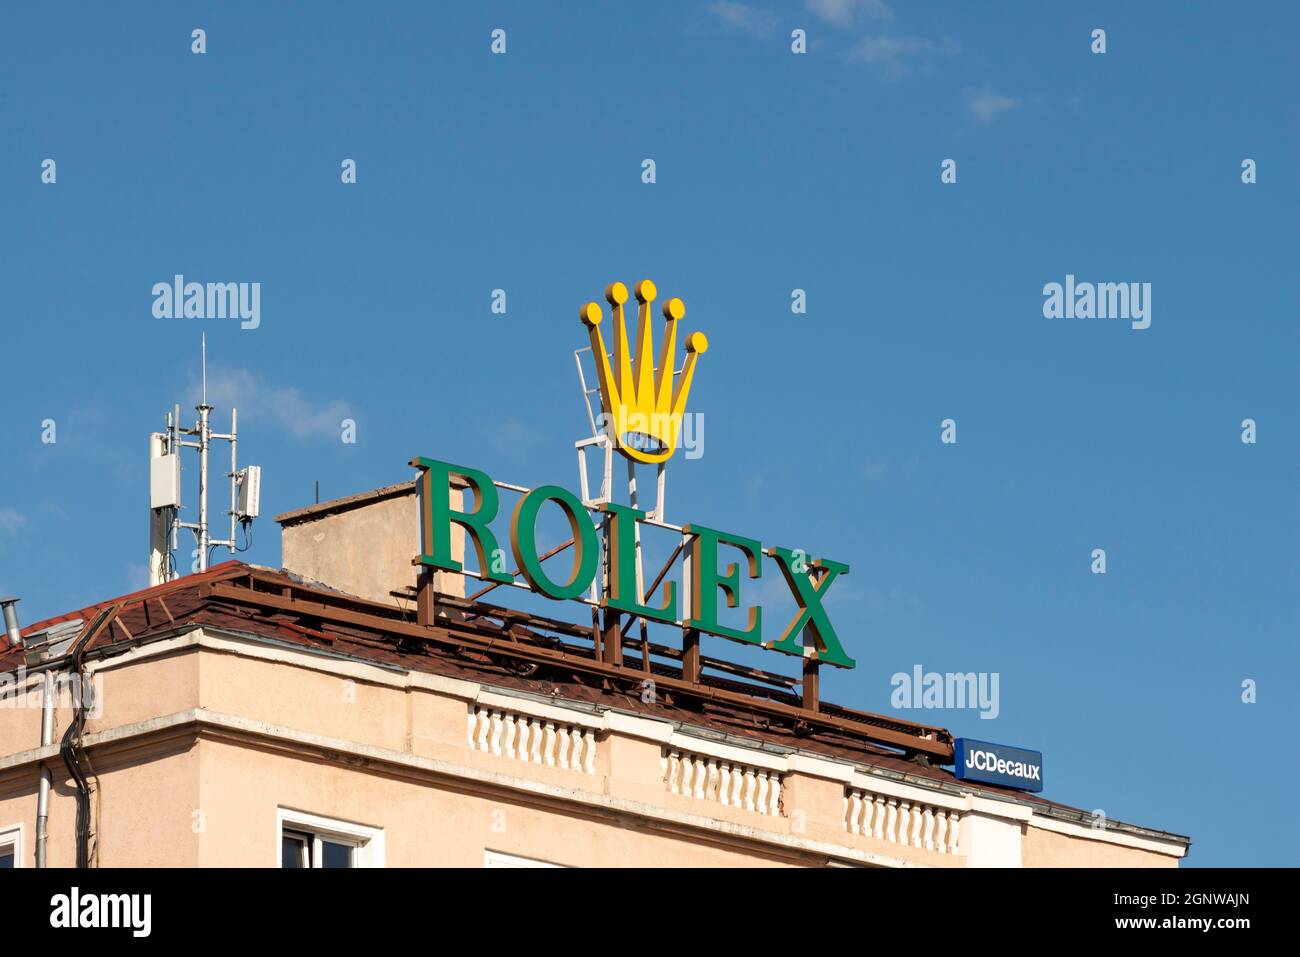 Rolex luci al neon pubblicità su edificio residenziale a Sofia, Bulgaria Foto Stock